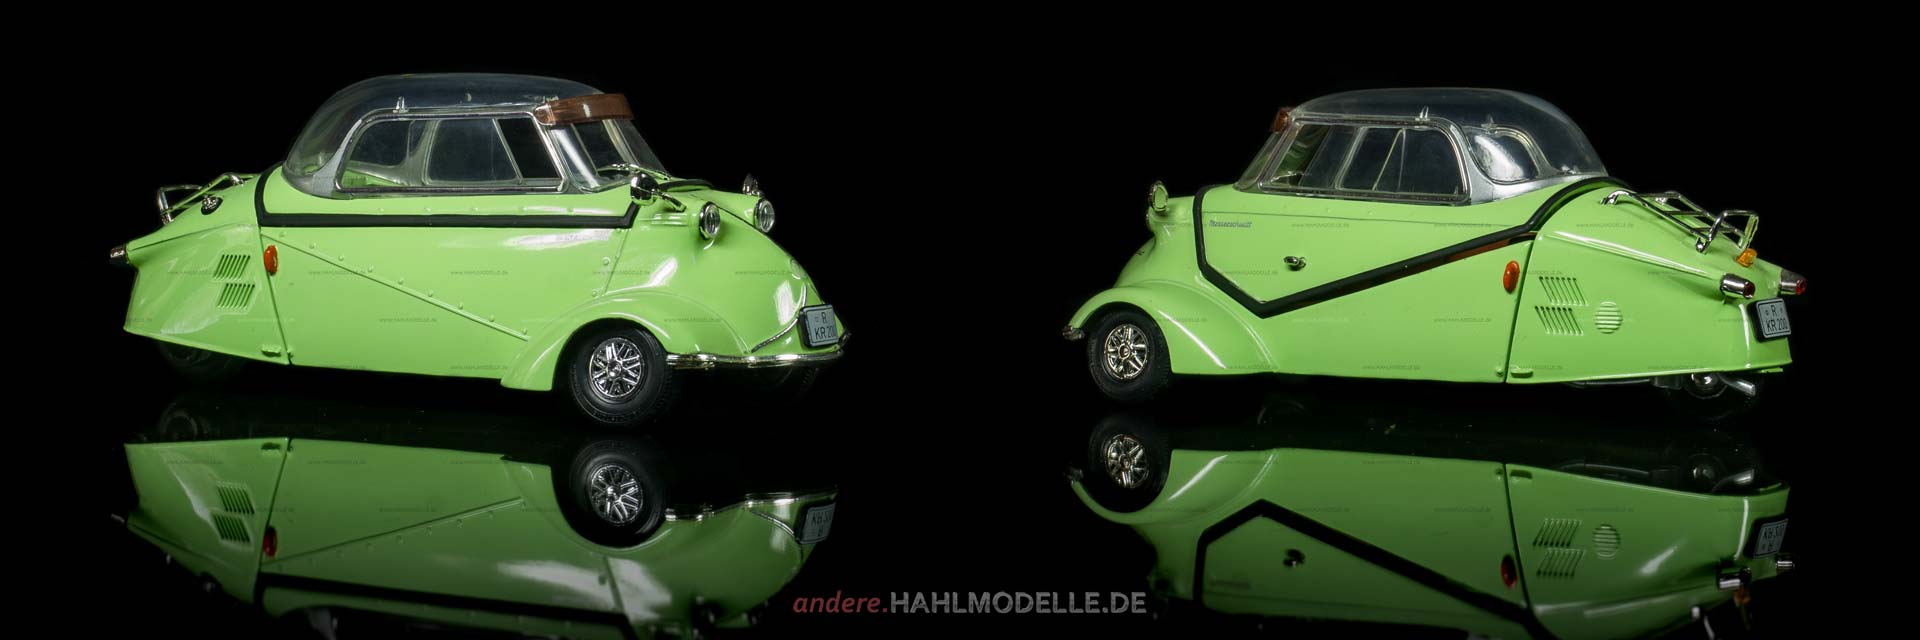 Messerschmitt Kabinenroller KR 200 | Rollermobil | Revell | 1:18 | www.andere.hahlmodelle.de